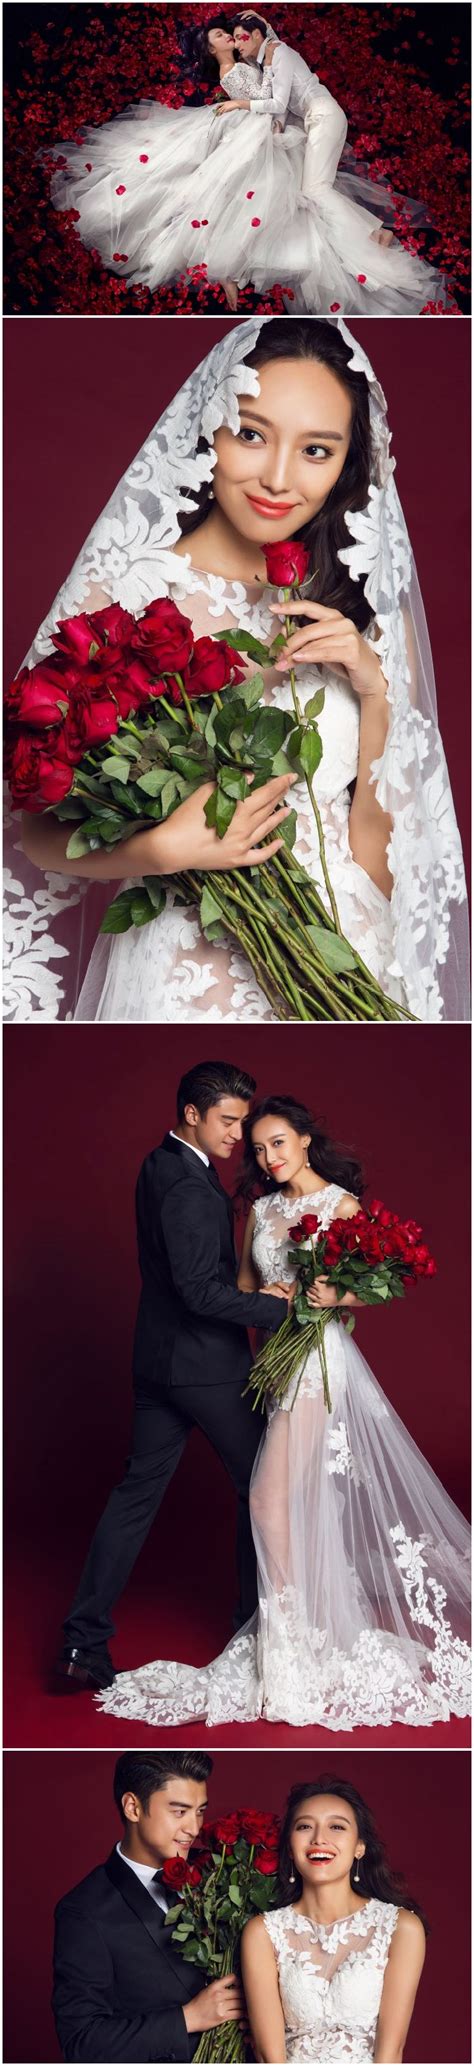 挽着手的情侣婚纱摄影图片免费下载_红动中国